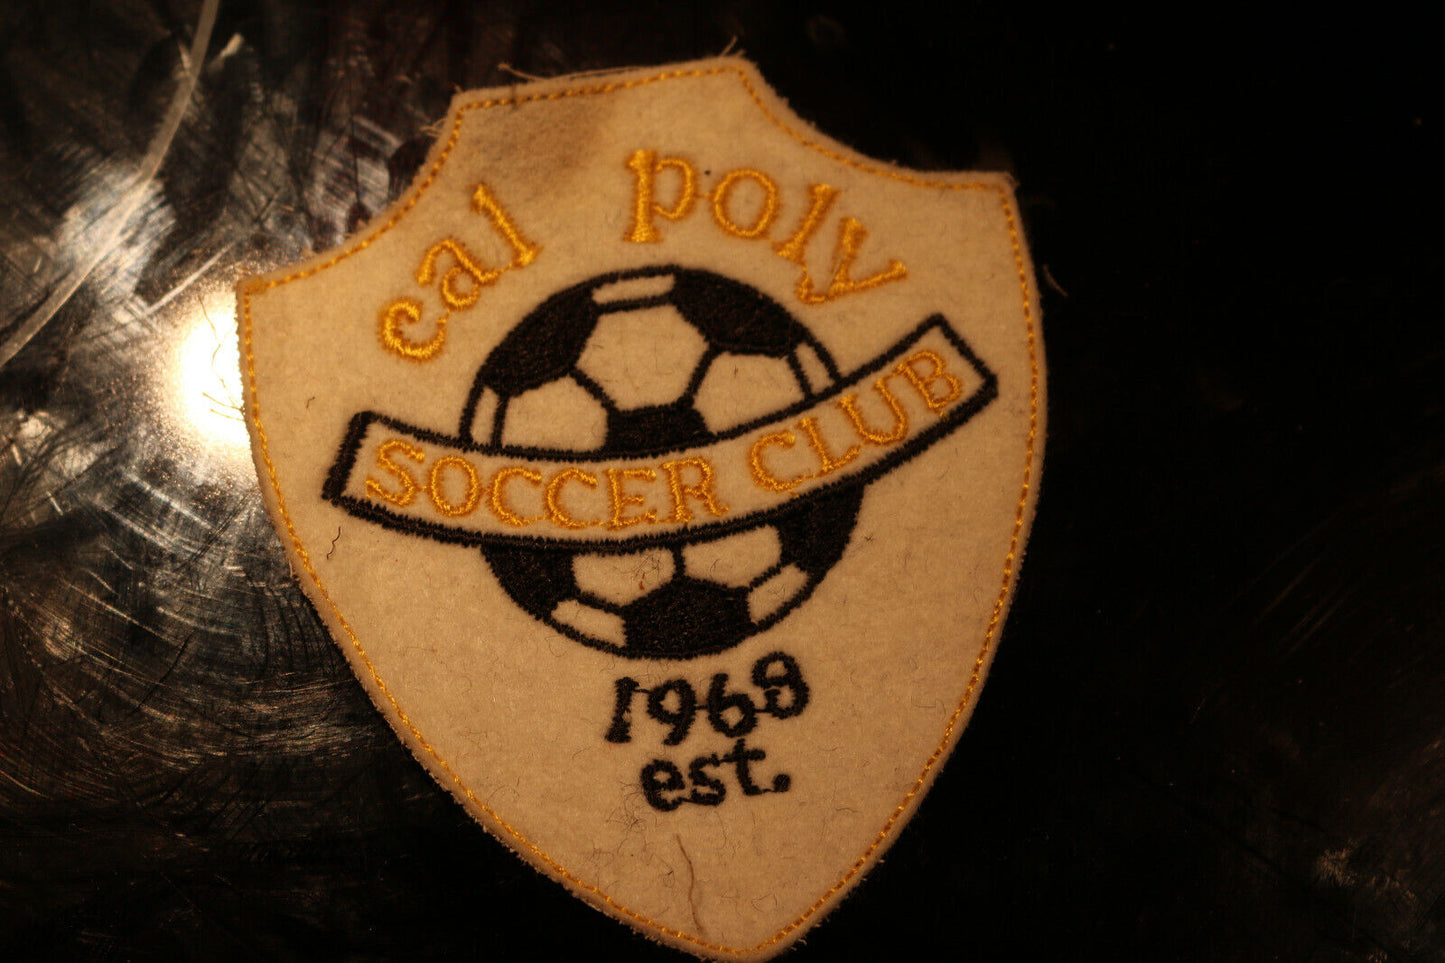 Vintage Shoulder Patche Souvenir Cal Poly Soccer Club 1968 Est.#1